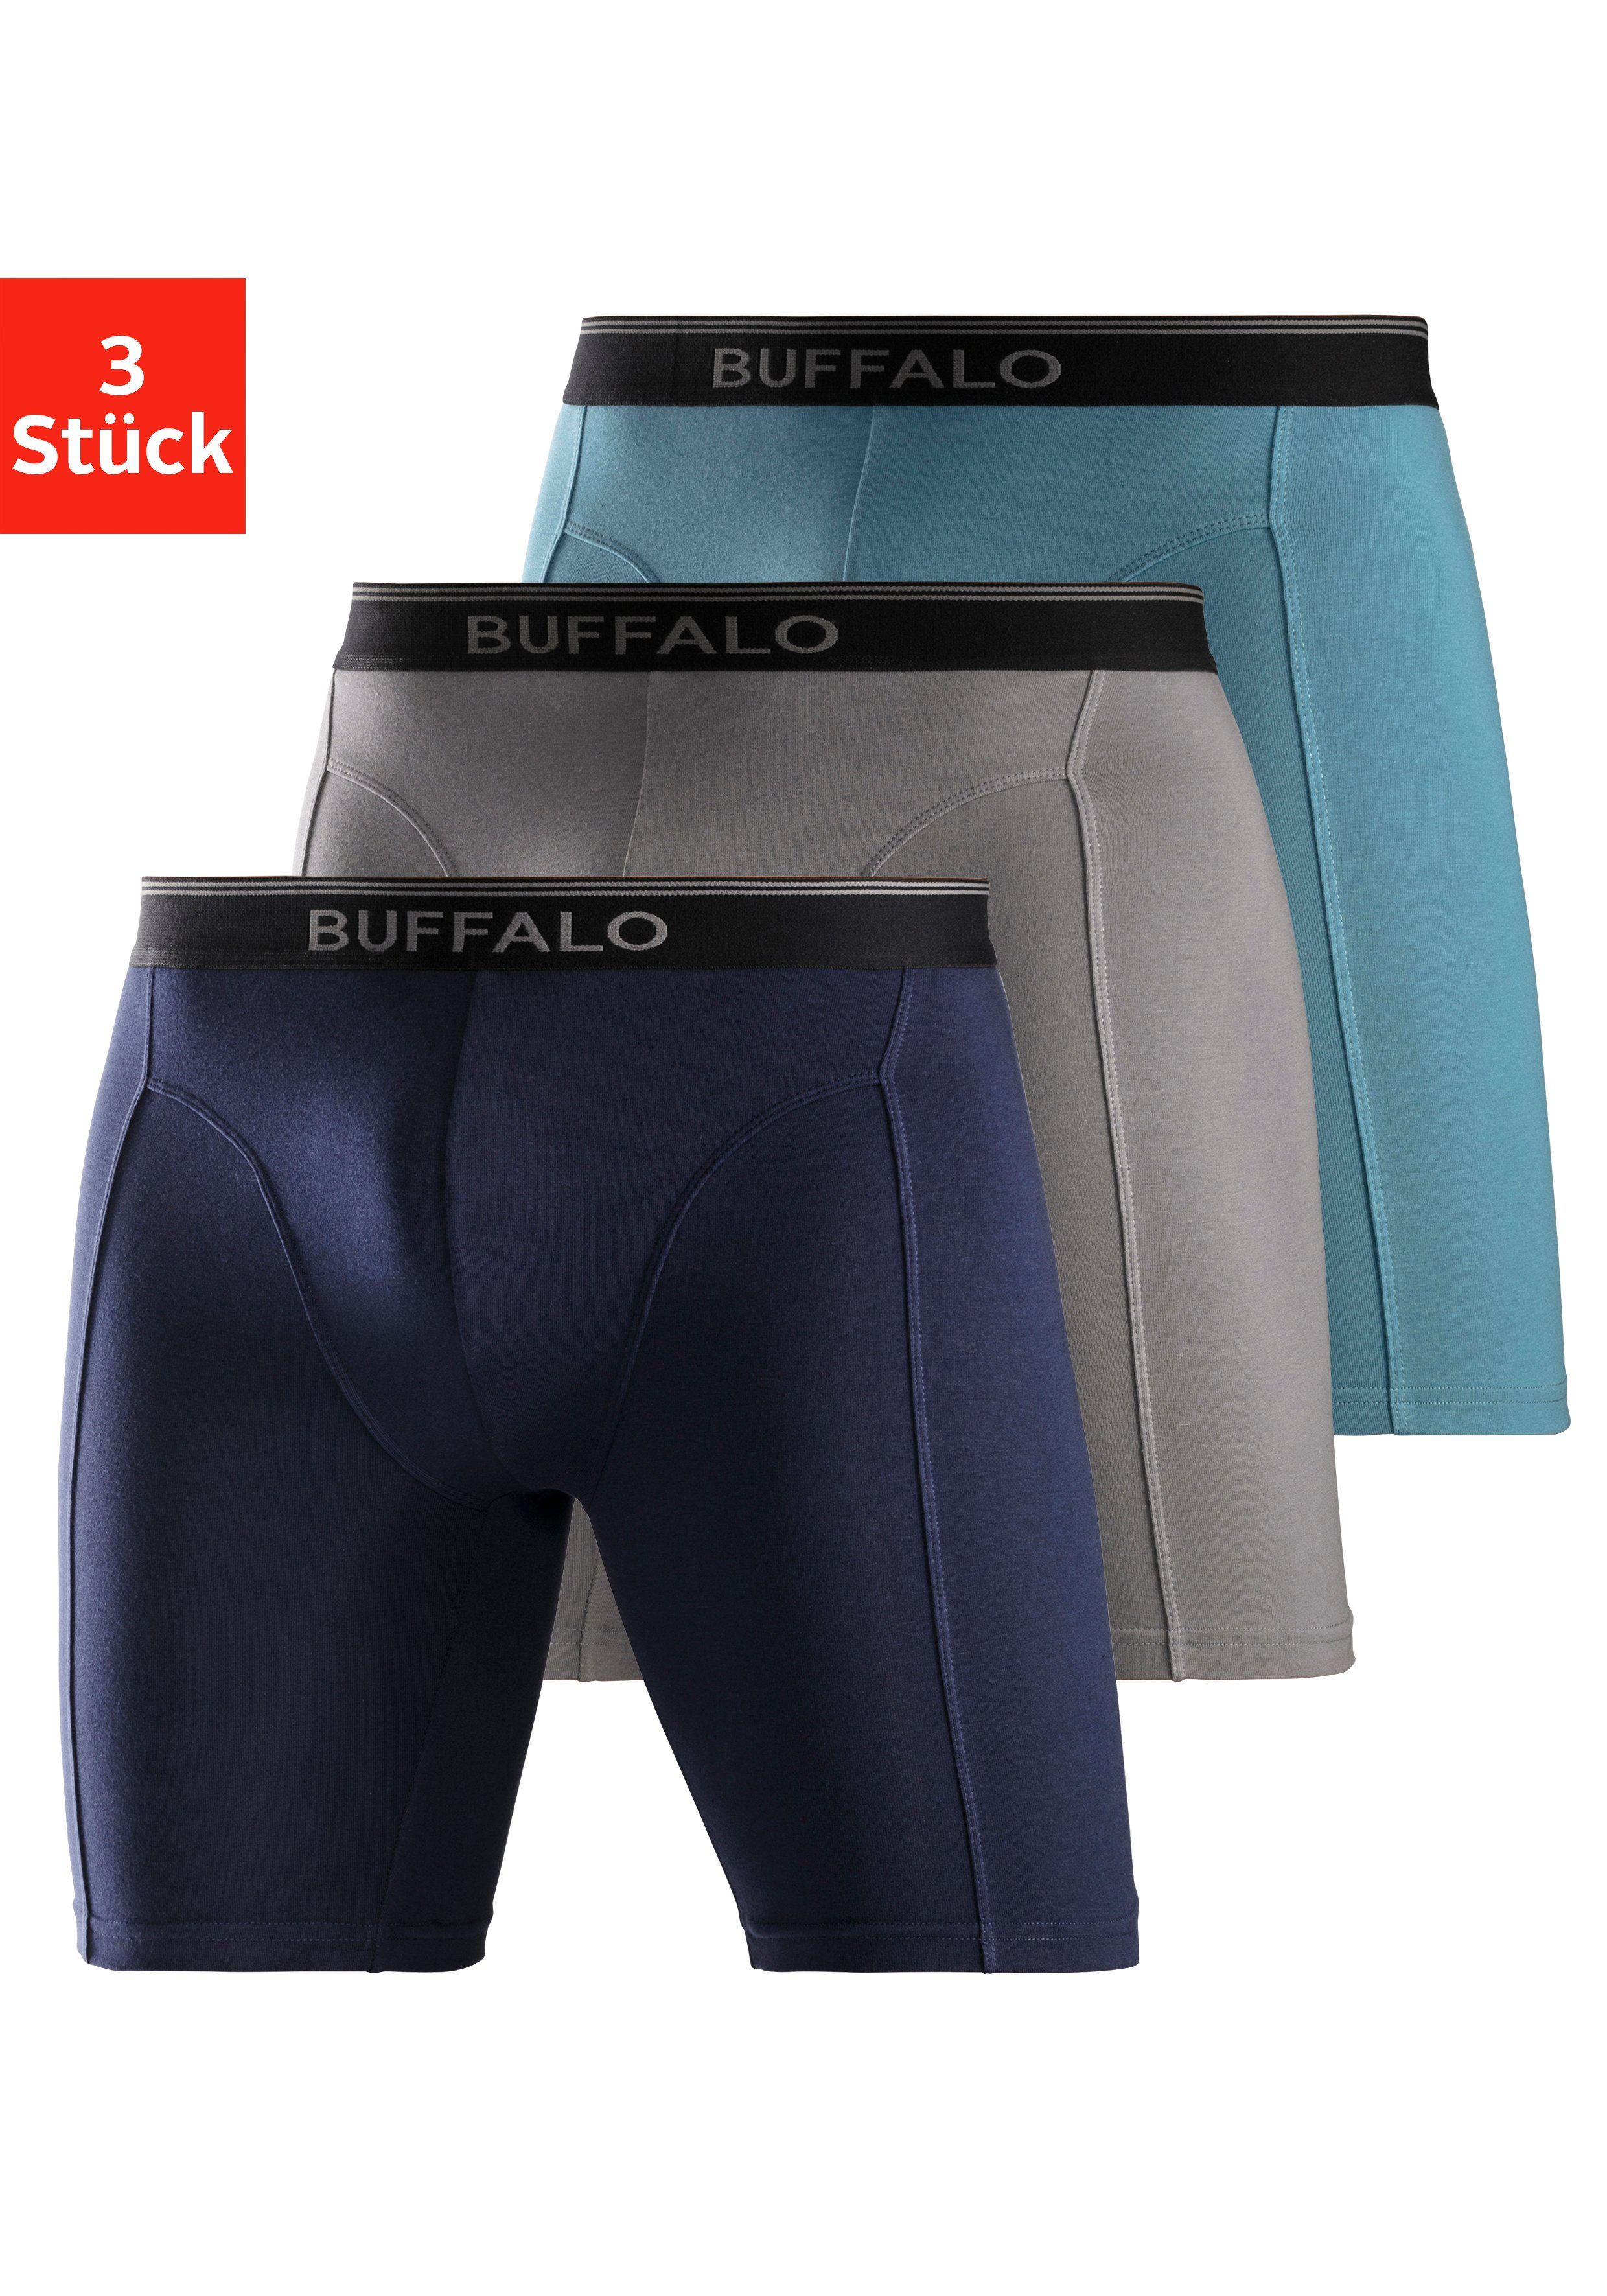 Buffalo Boxer (Packung, 3-St) in langer Form ideal auch für Sport und Trekking aquablau, grau, navy